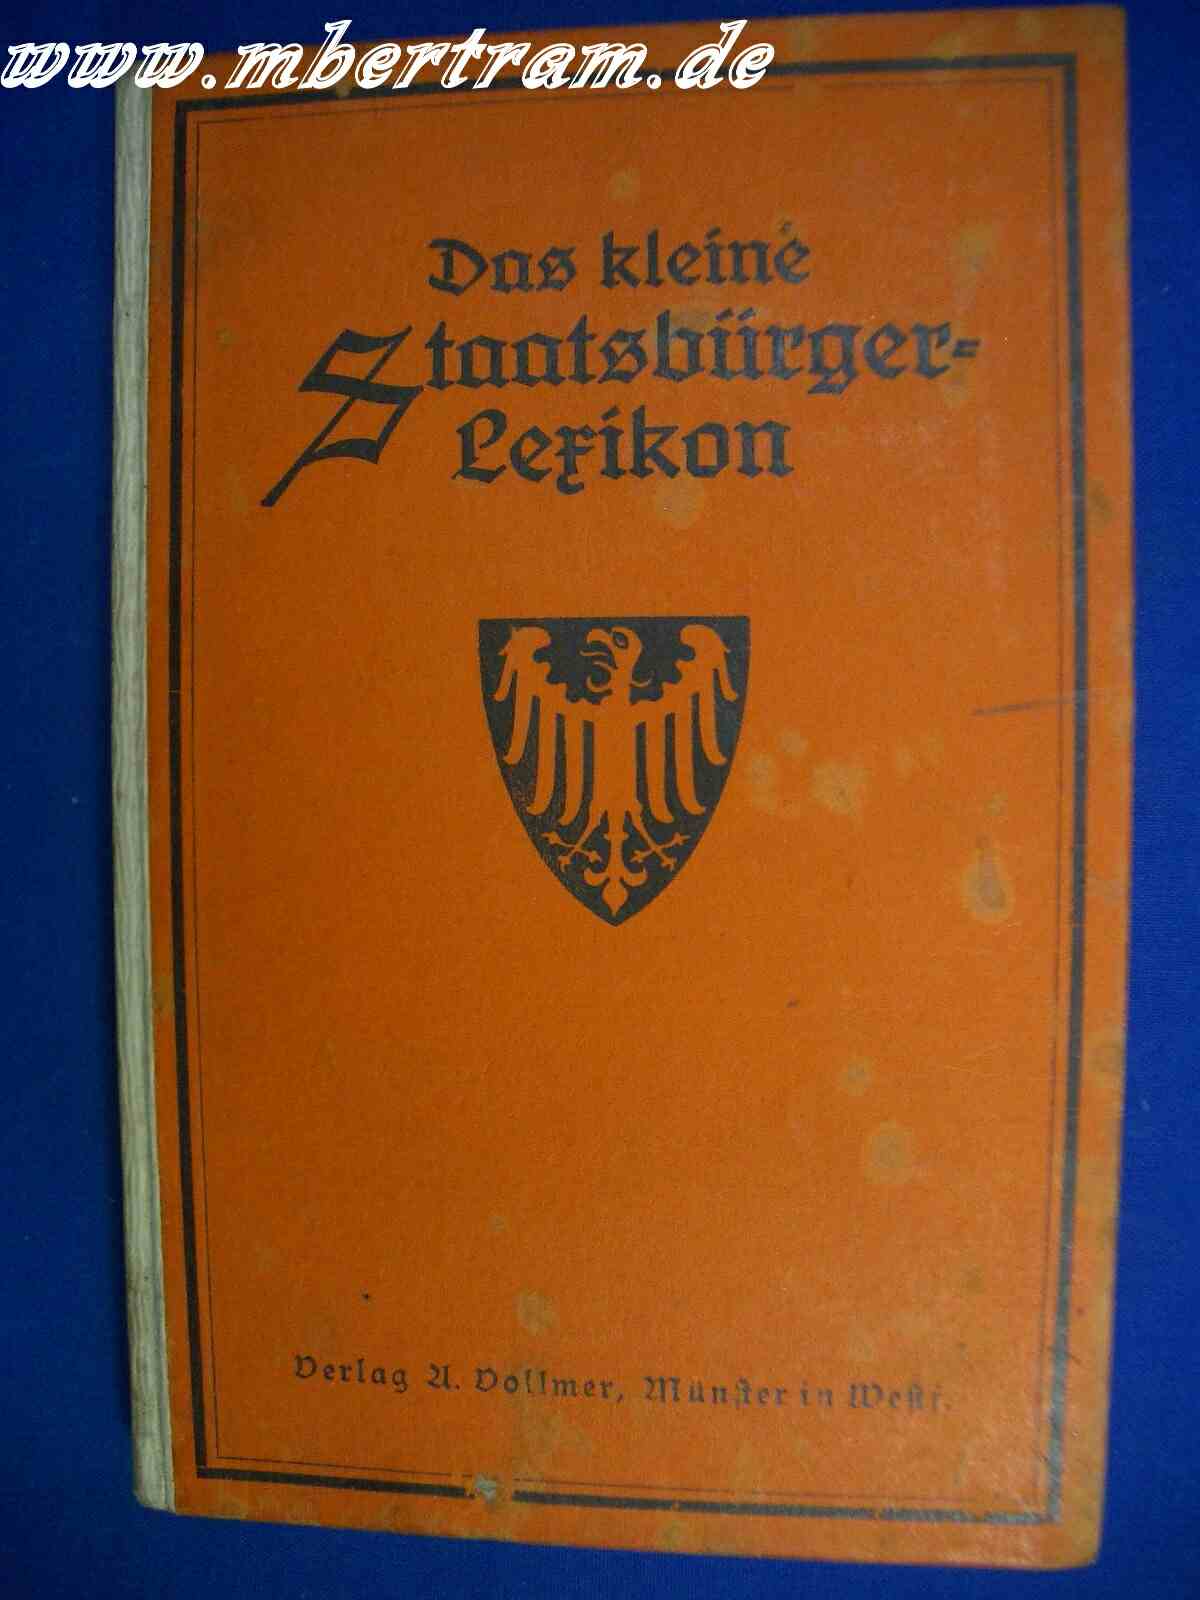 Das kleine Staatsbürger Lexikon, Vollmer, Münster, 1927